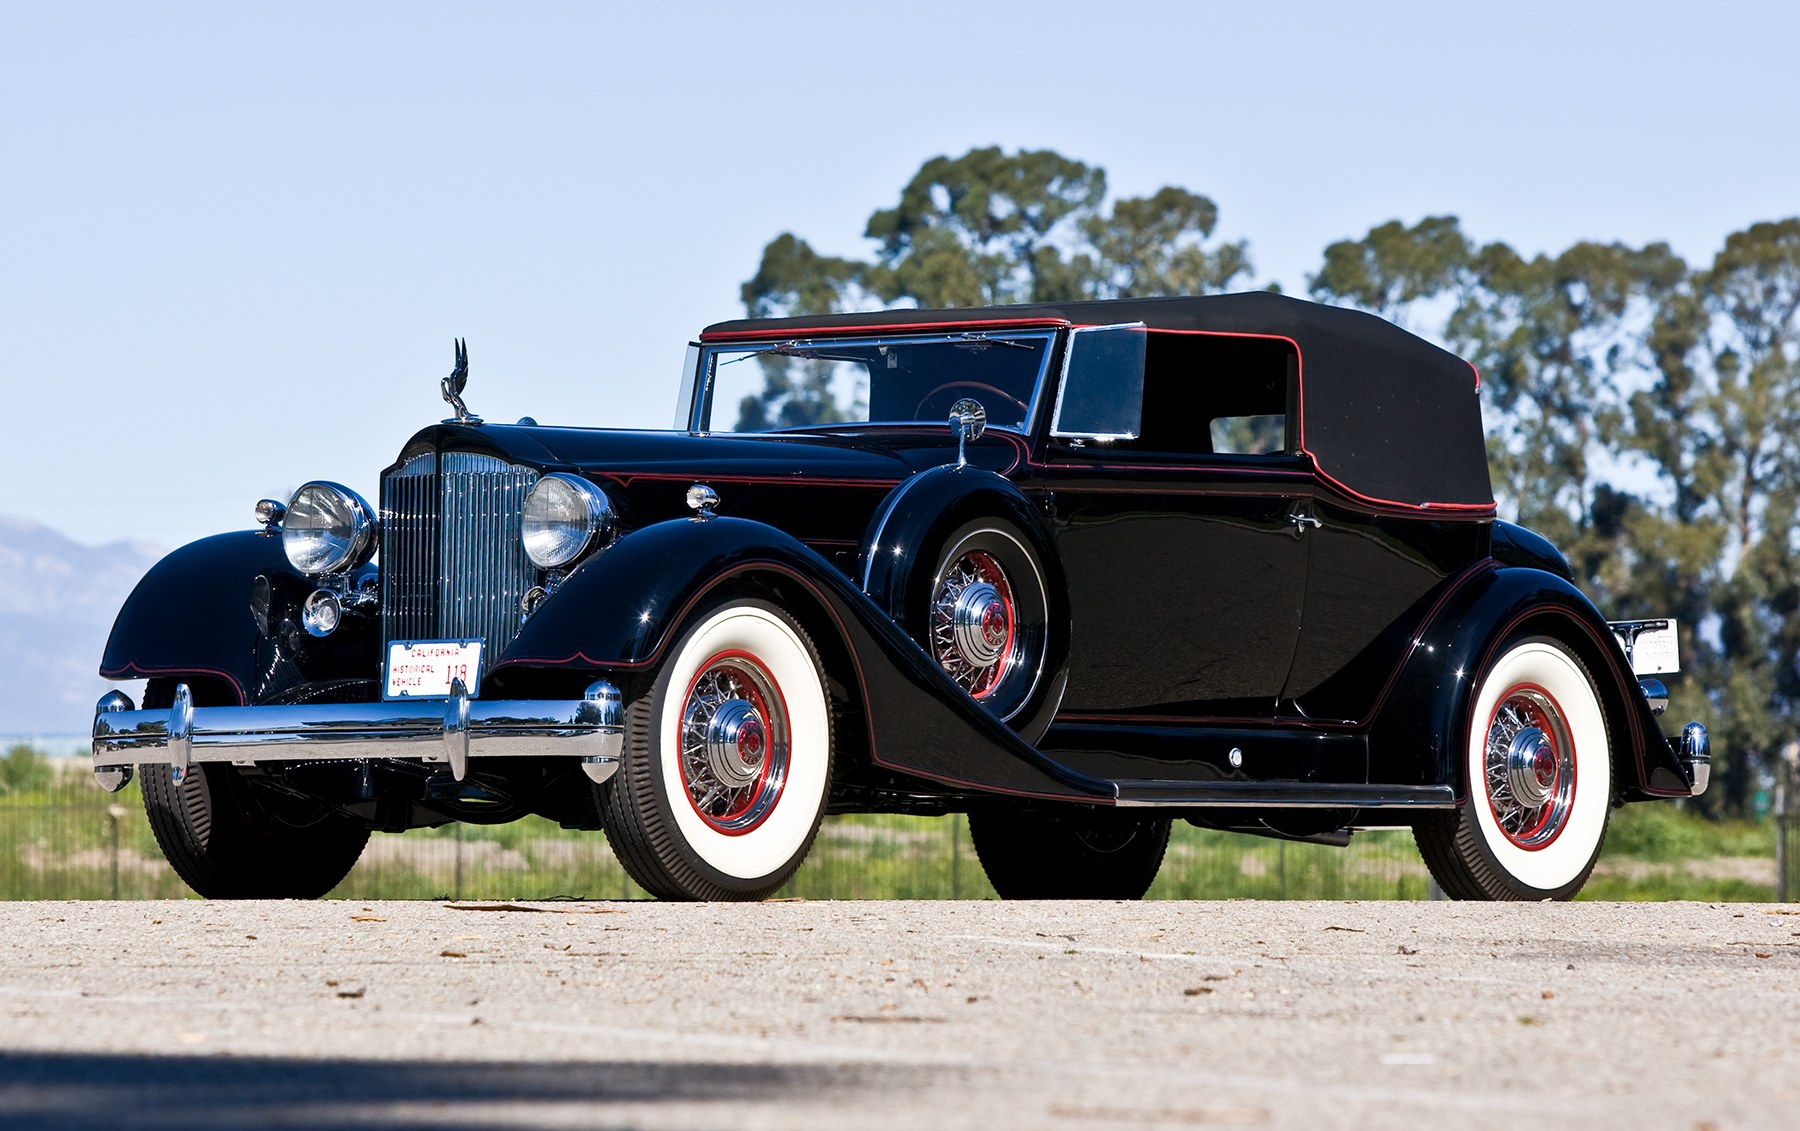 1934 Packard Twelve Model 1107 Convertible Victoria